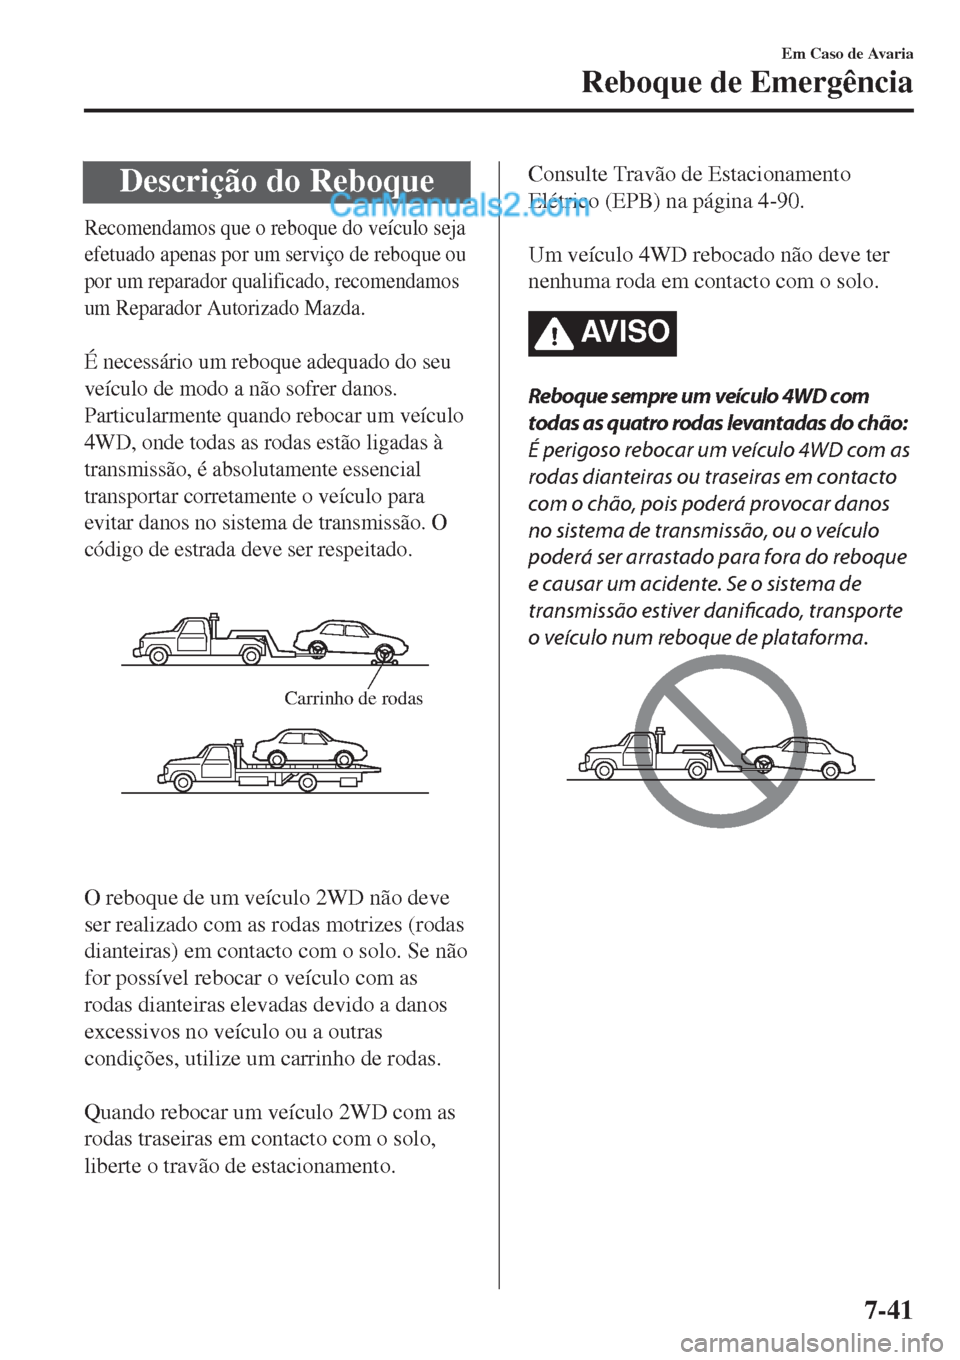 MAZDA MODEL CX-5 2017  Manual do proprietário (in Portuguese) Descrição do Reboque
Recomendamos que o reboque do veículo seja
efetuado apenas por um serviço de reboque ou
por um reparador qualificado, recomendamos
um Reparador Autorizado Mazda.
 
É necessá